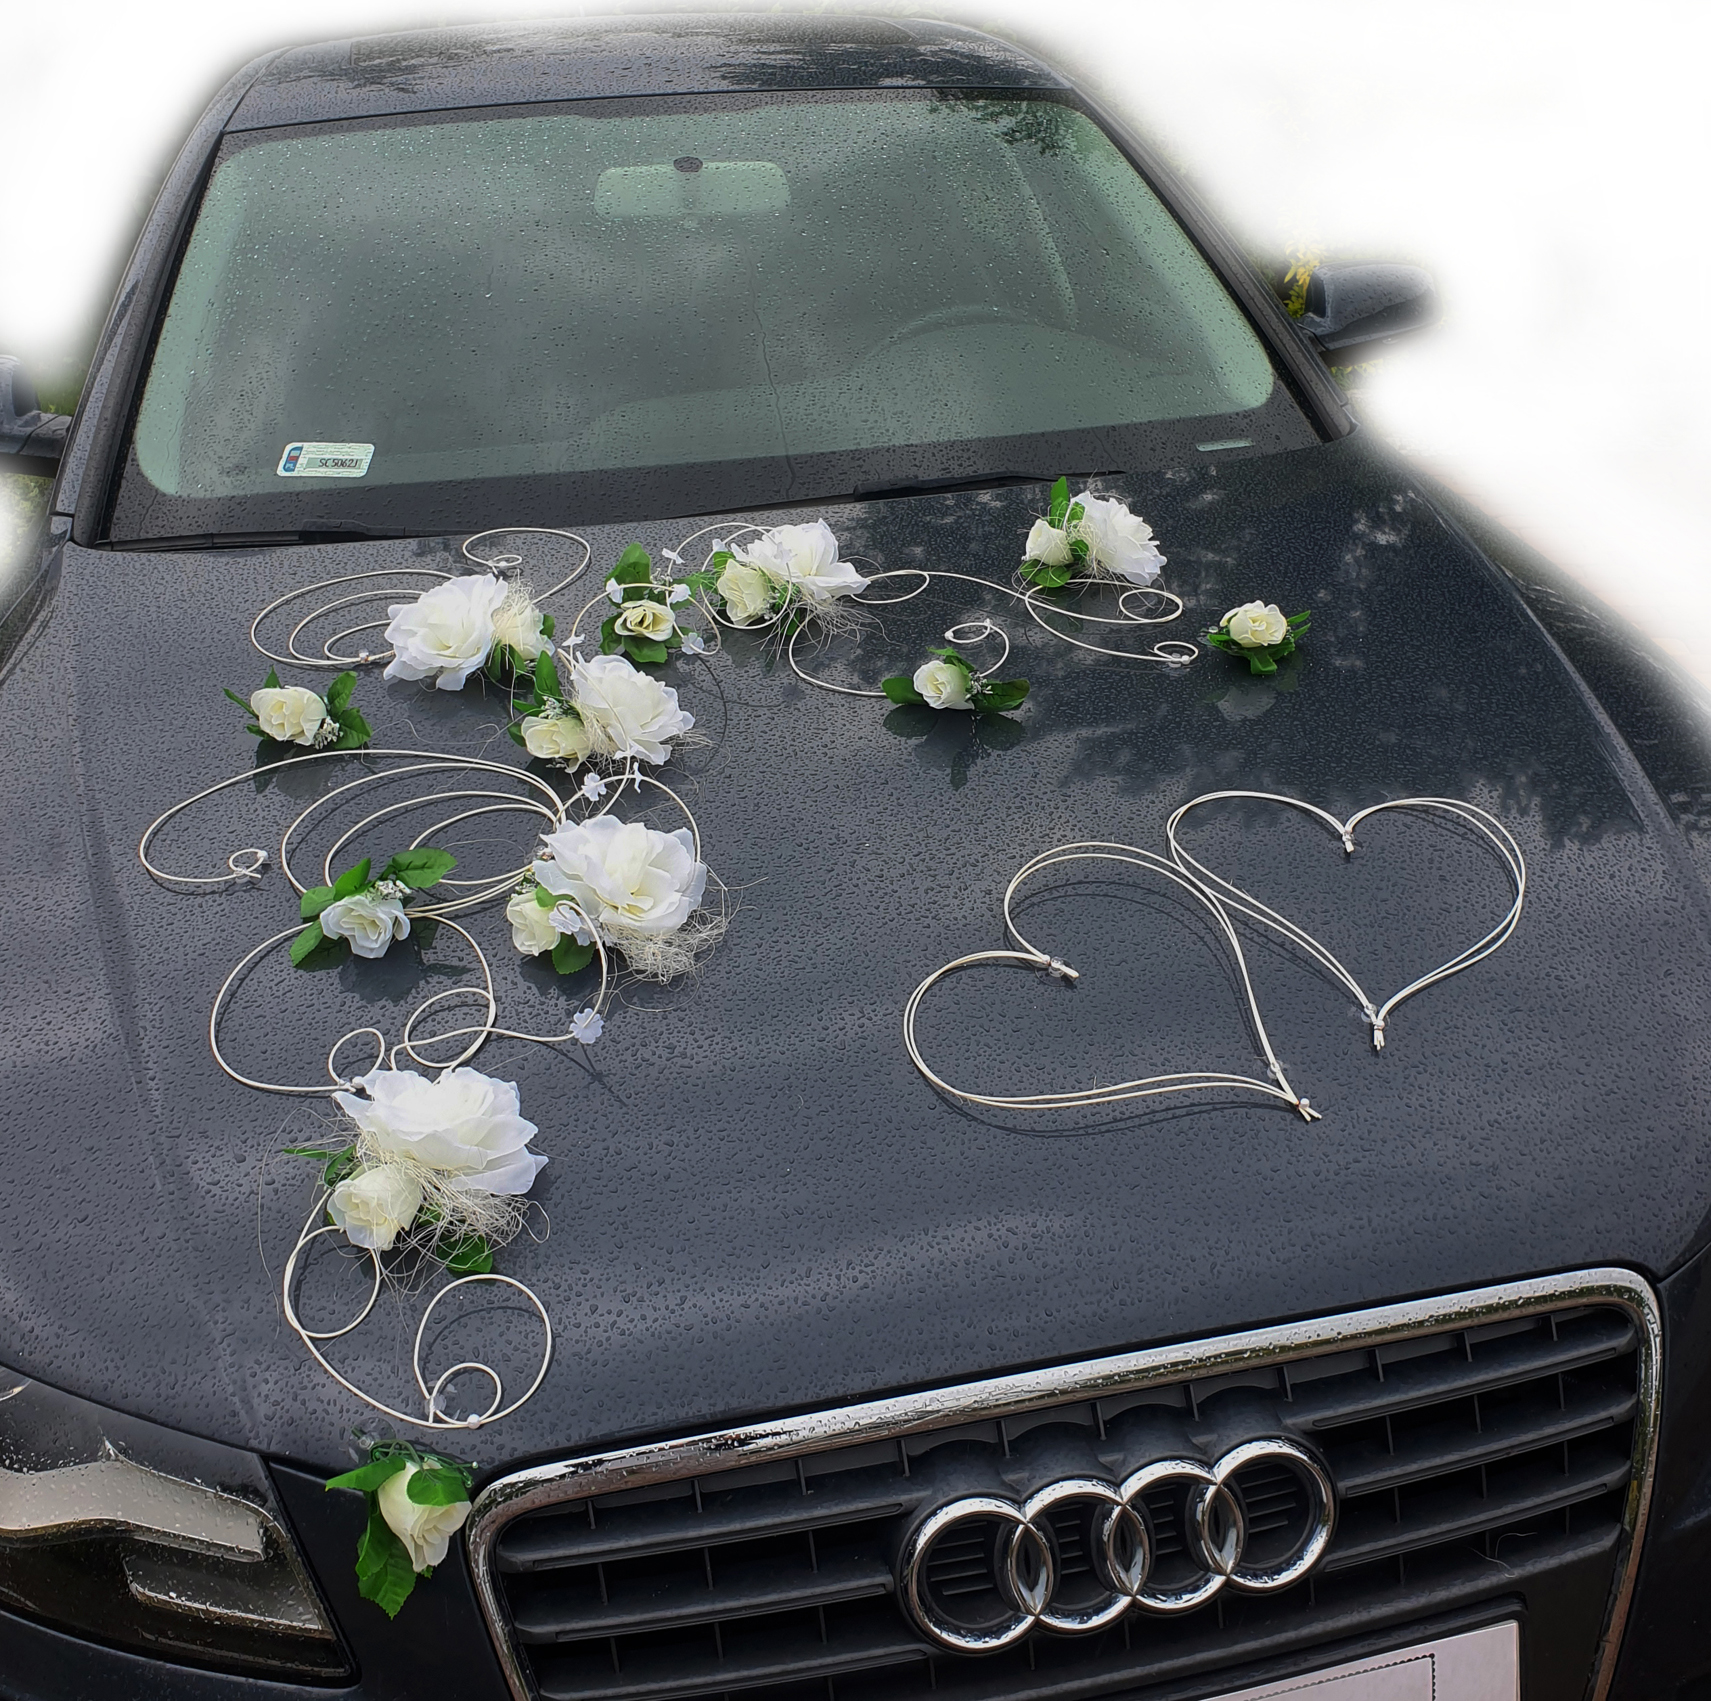 EMILA kremowa - dekoracja samochodu ślubnego wedding car decoration set